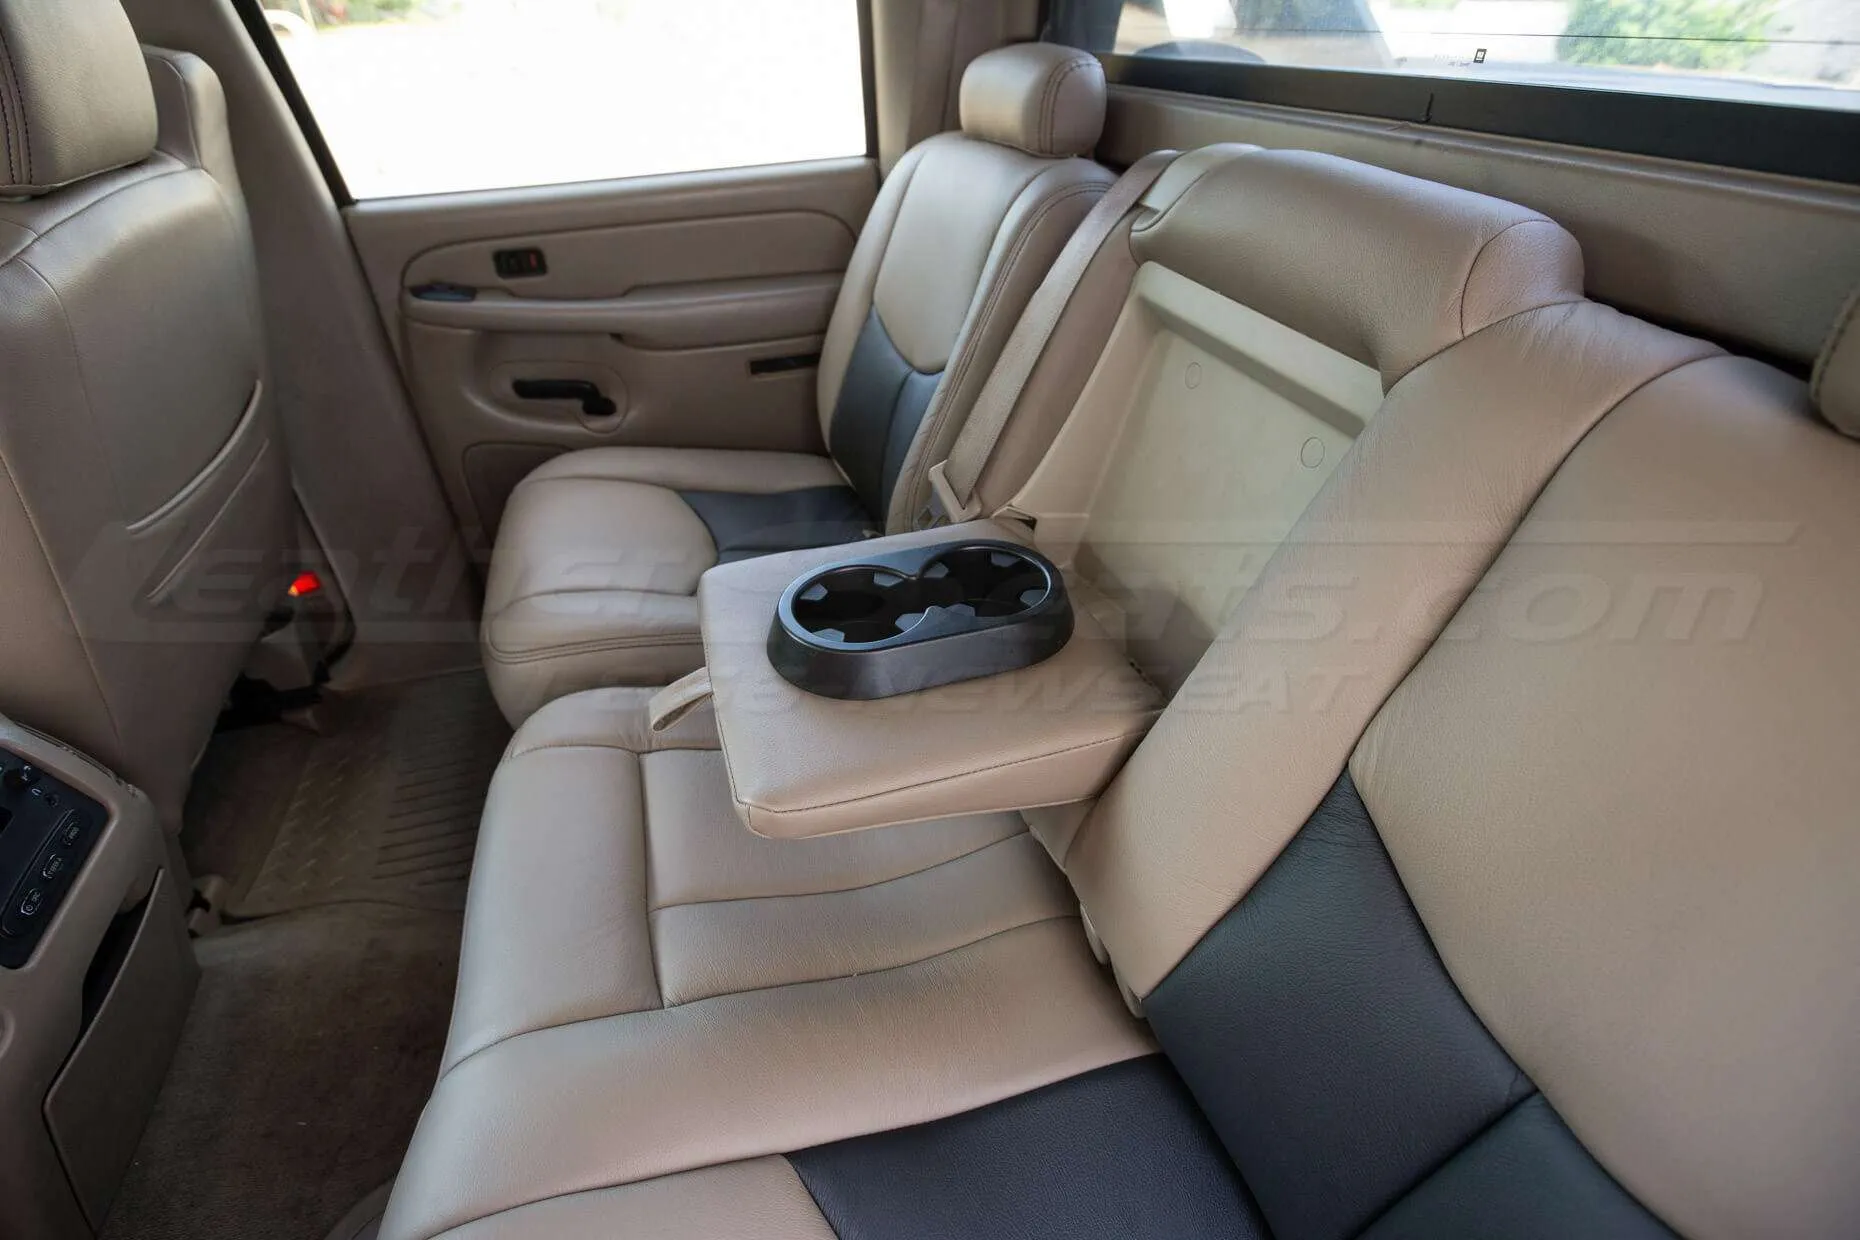 03-06 Chevrolet Avalanche Installed Upholstery Kit - Desert & Black - Rear Seats w/ armrest down